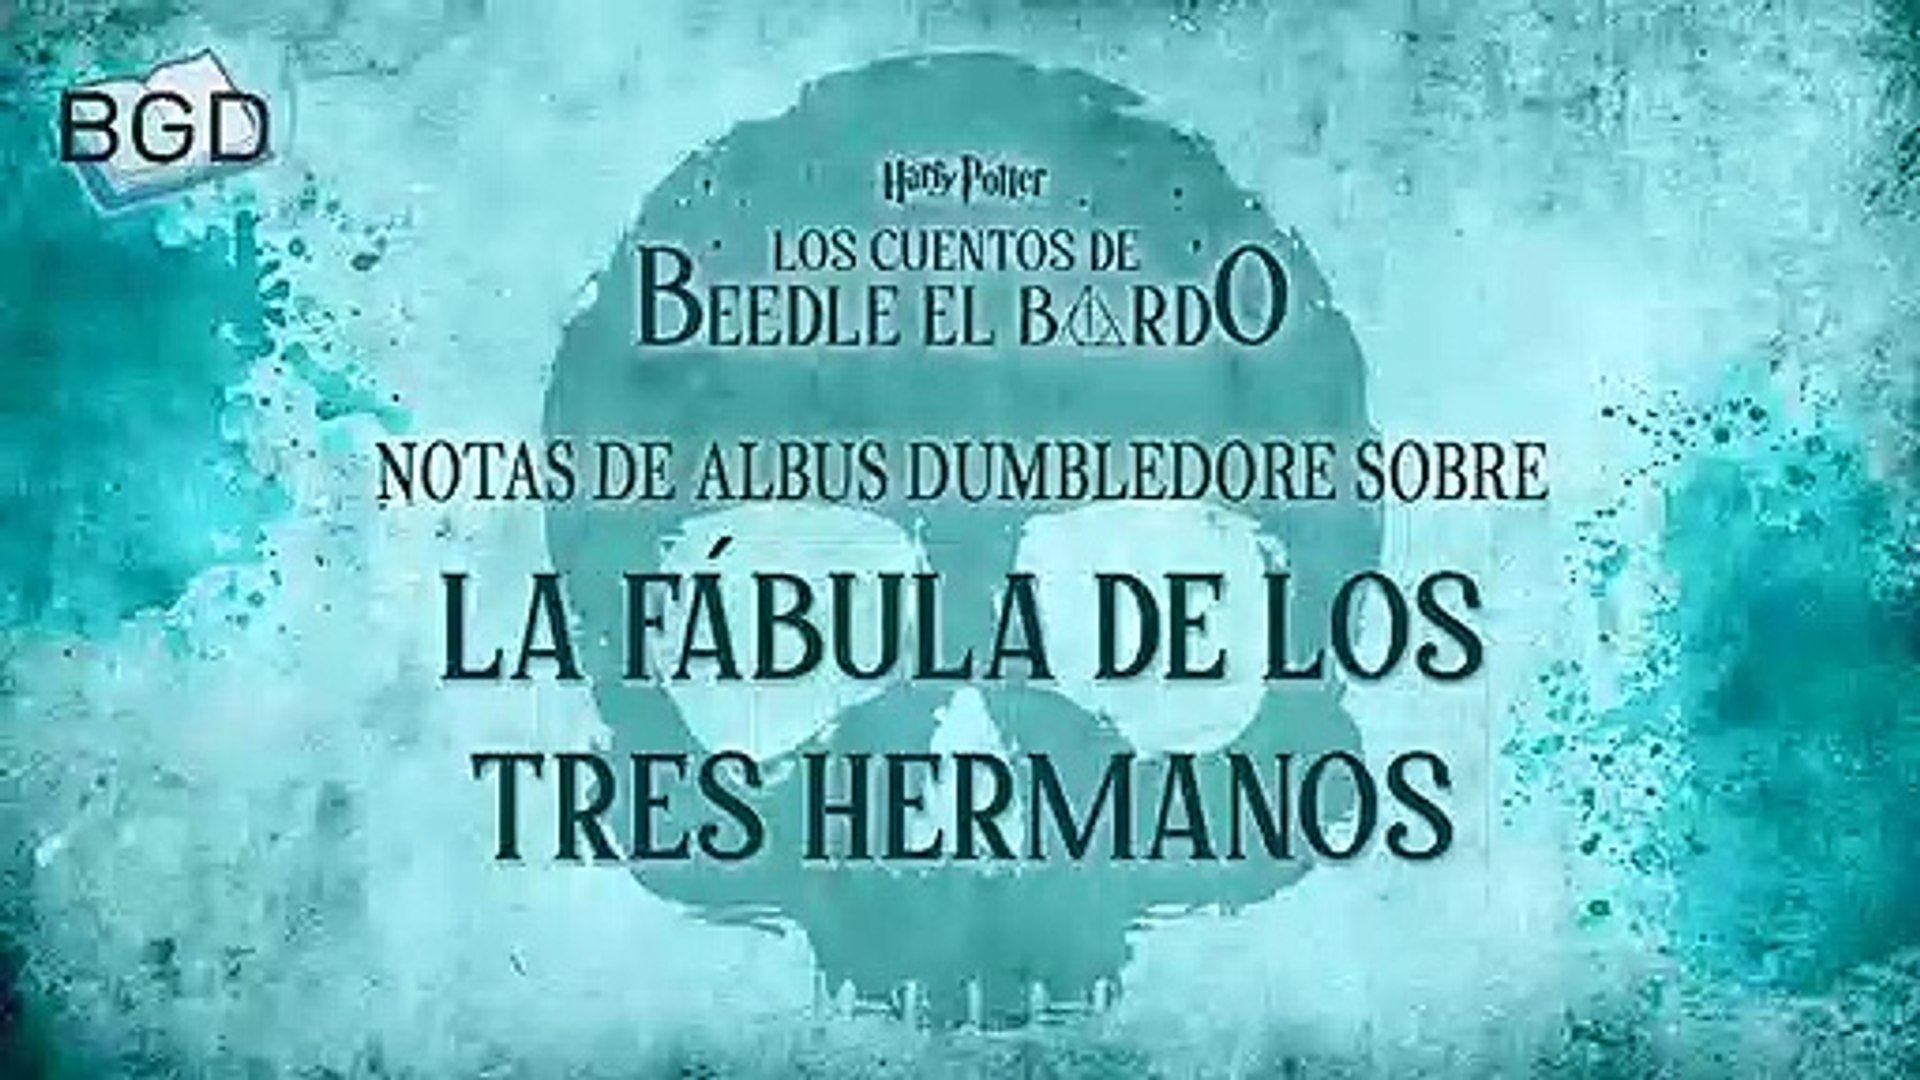 Los cuentos de Beedle el bardo (Notas de Albus Dumbledore sobre La fábula  de los tres hermanos) - Audiolibro en Castellano - Vídeo Dailymotion